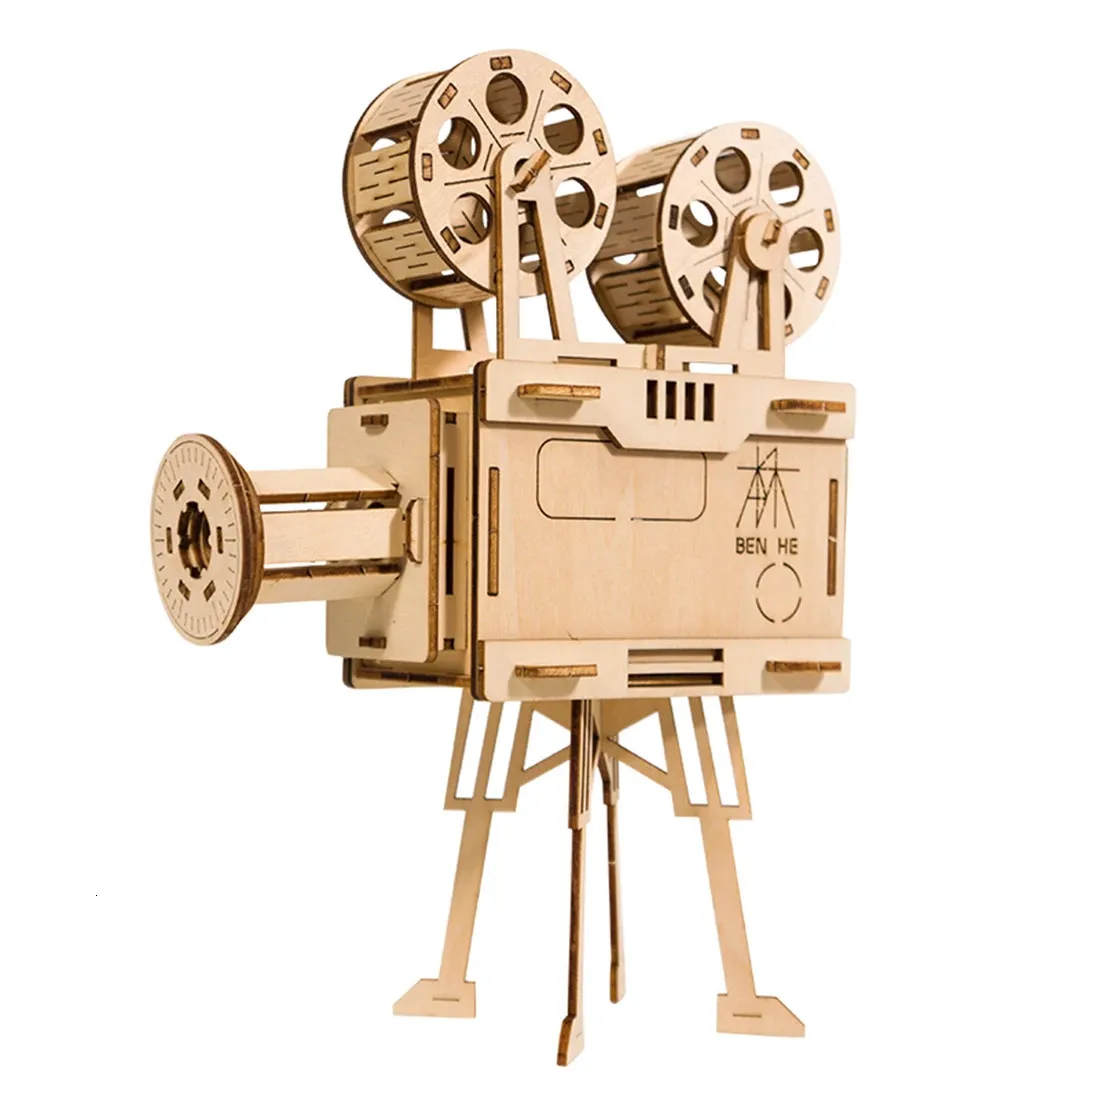 77 шт. DIY 3D фильм-проектор головоломка деревянная модель Строительный комплект сборка Vitascope игрушка блок сборка игрушки 240122